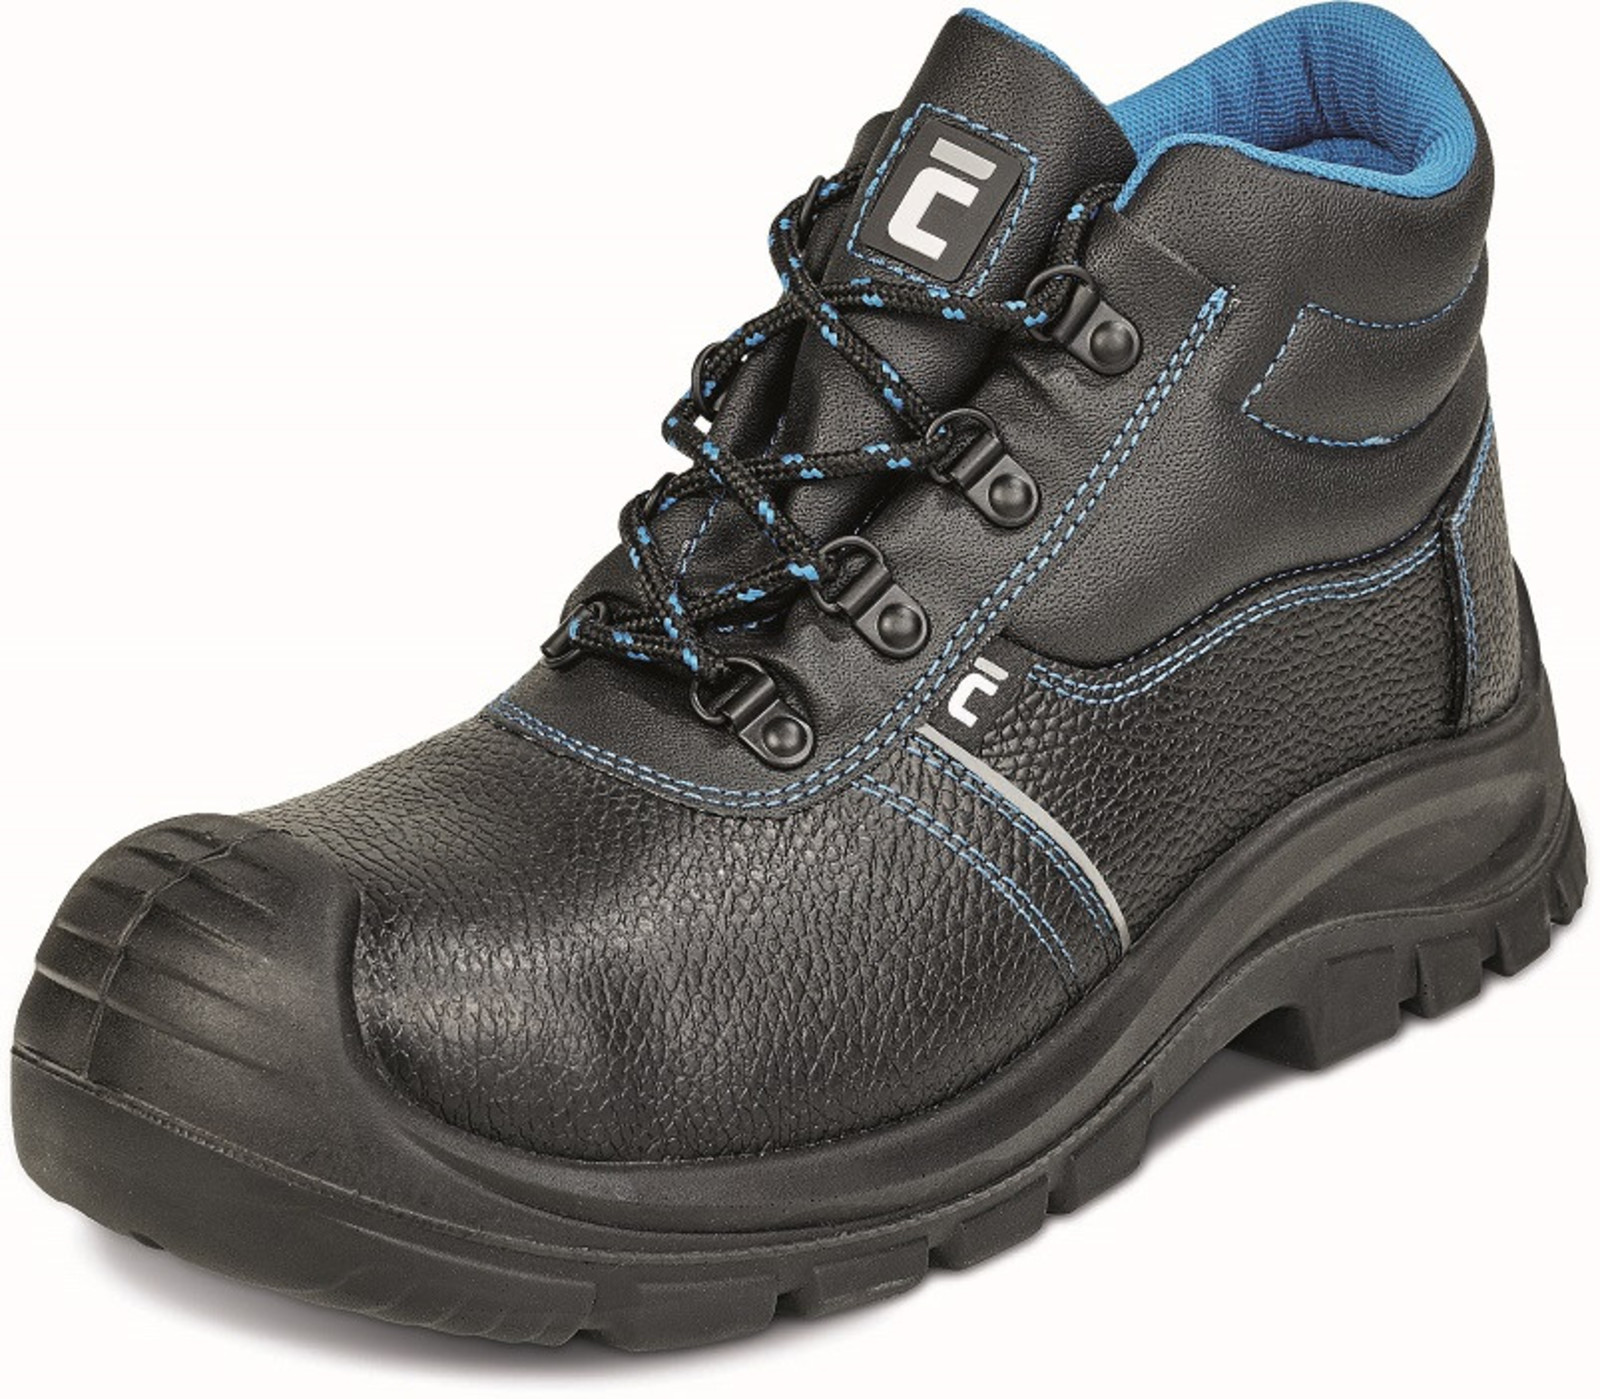 Bezpečnostná obuv Raven XT S1 - veľkosť: 45, farba: čierna